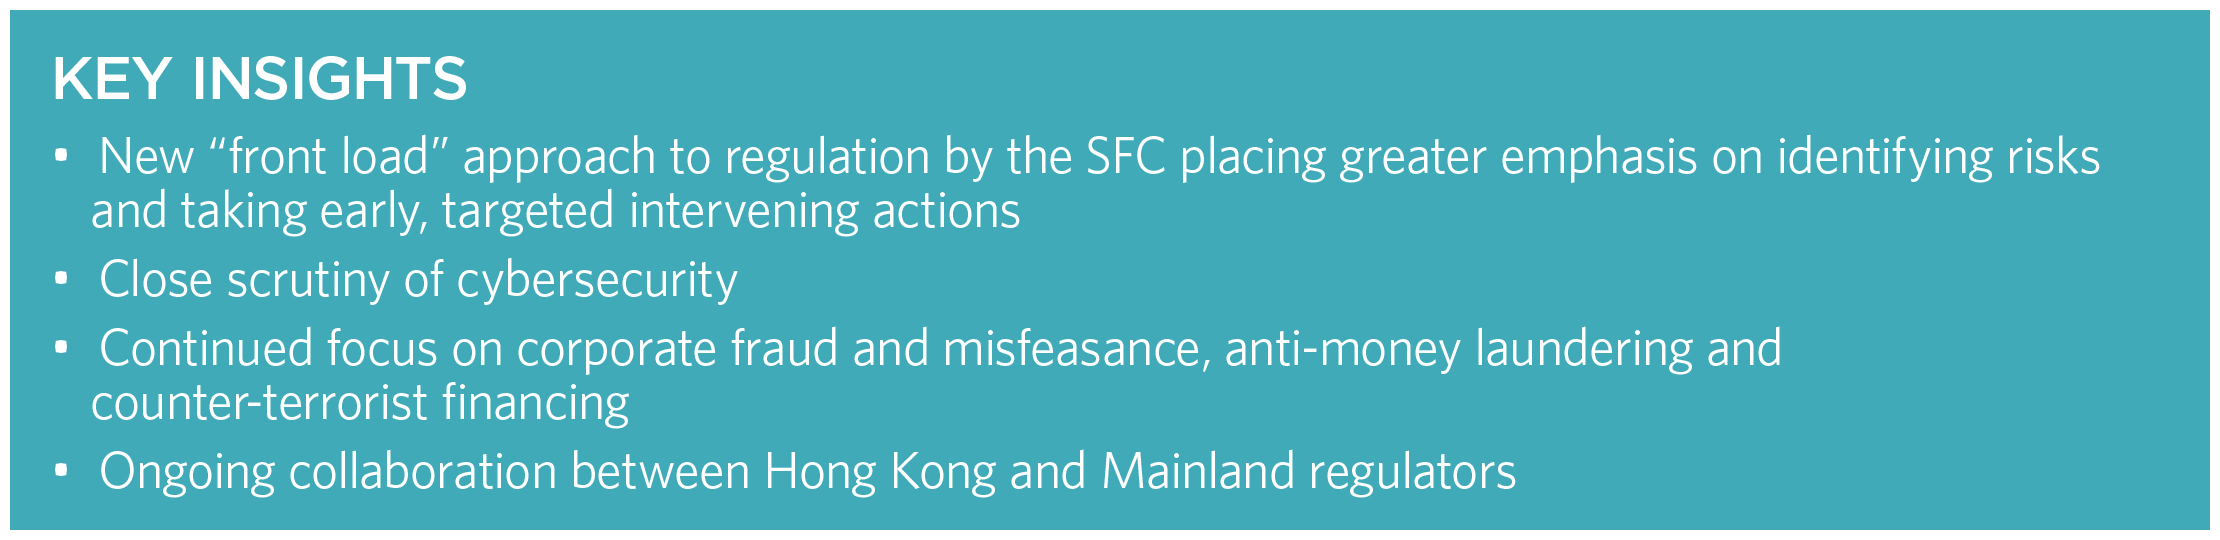 Key insights Hong Kong